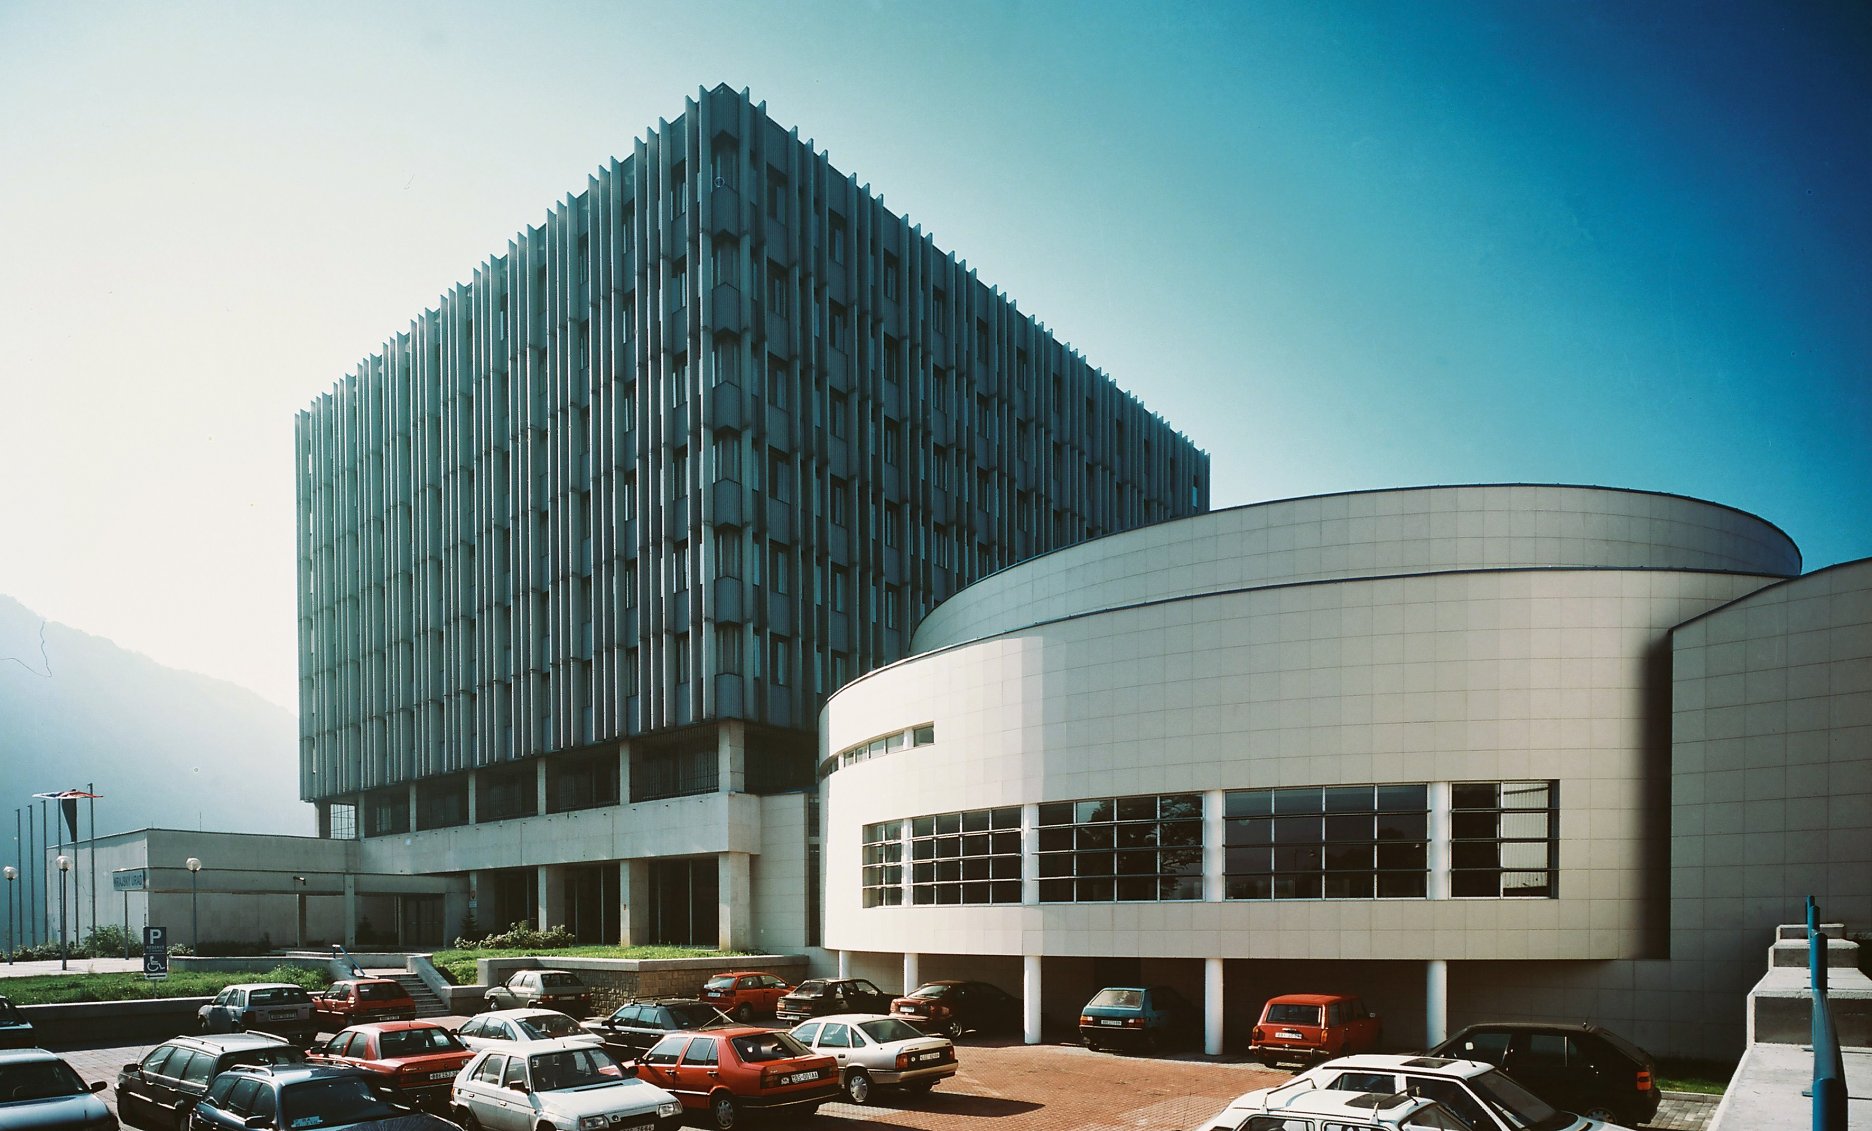 Administratívna budova S-KNV (terajší Krajský úrad) v Banskej Bystrici